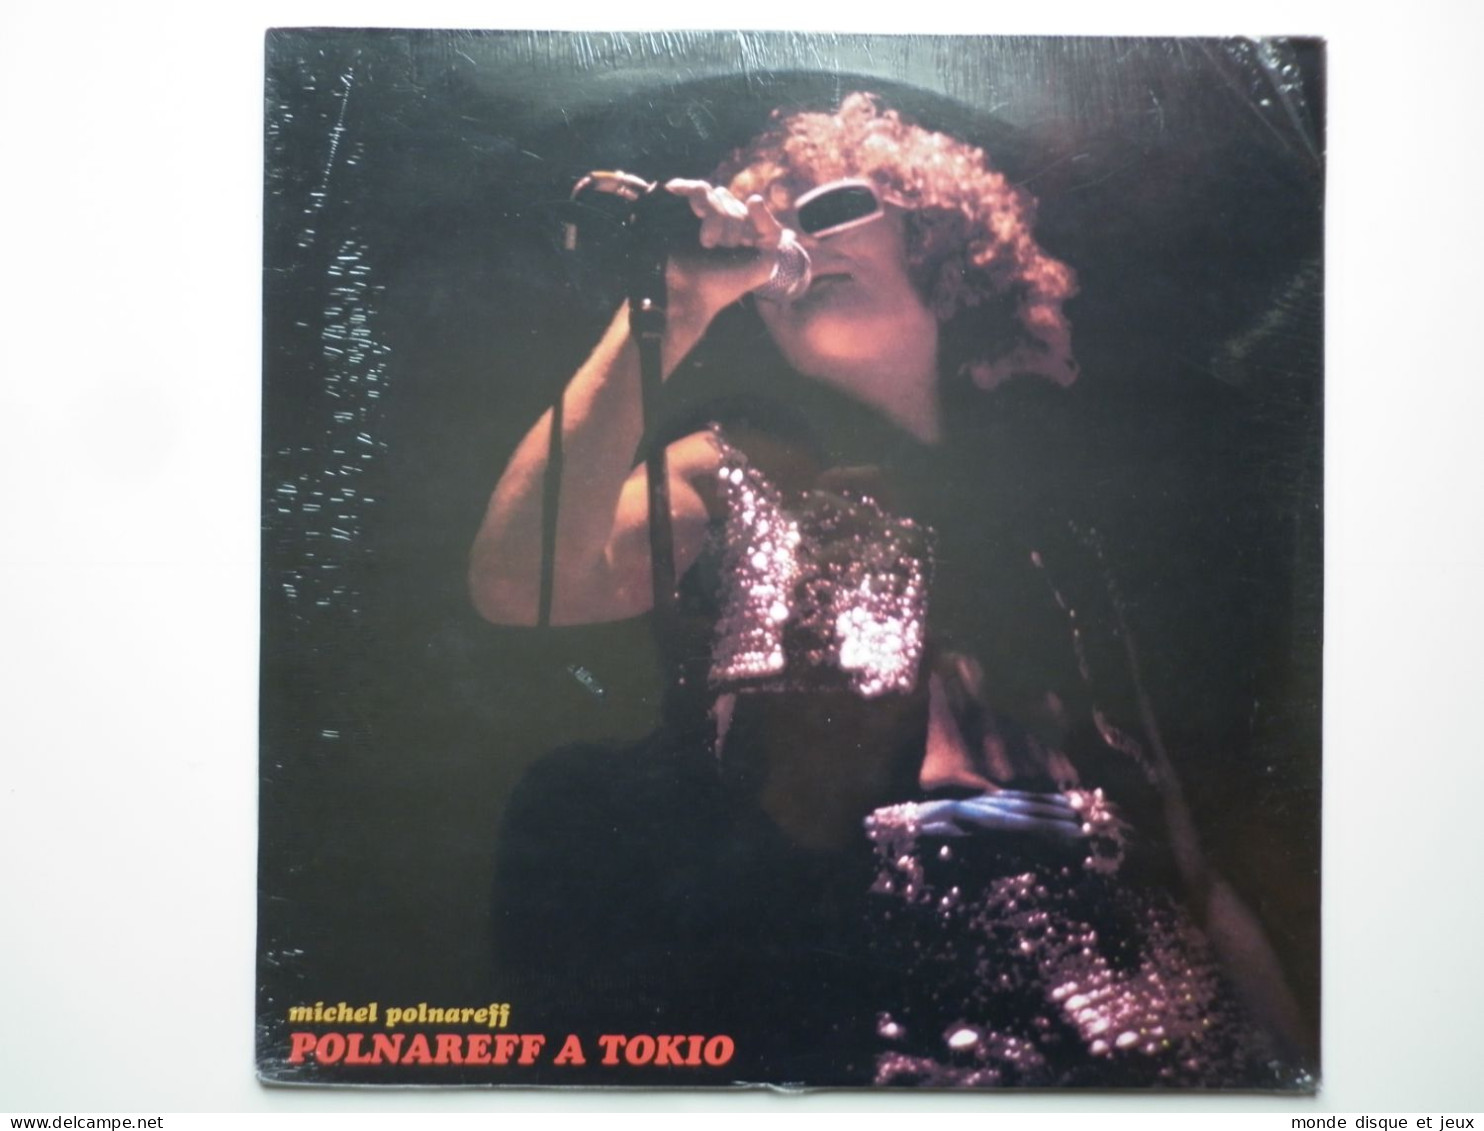 Michel Polnareff Album 33Tours Vinyle Polnareff A Tokio - Other - French Music